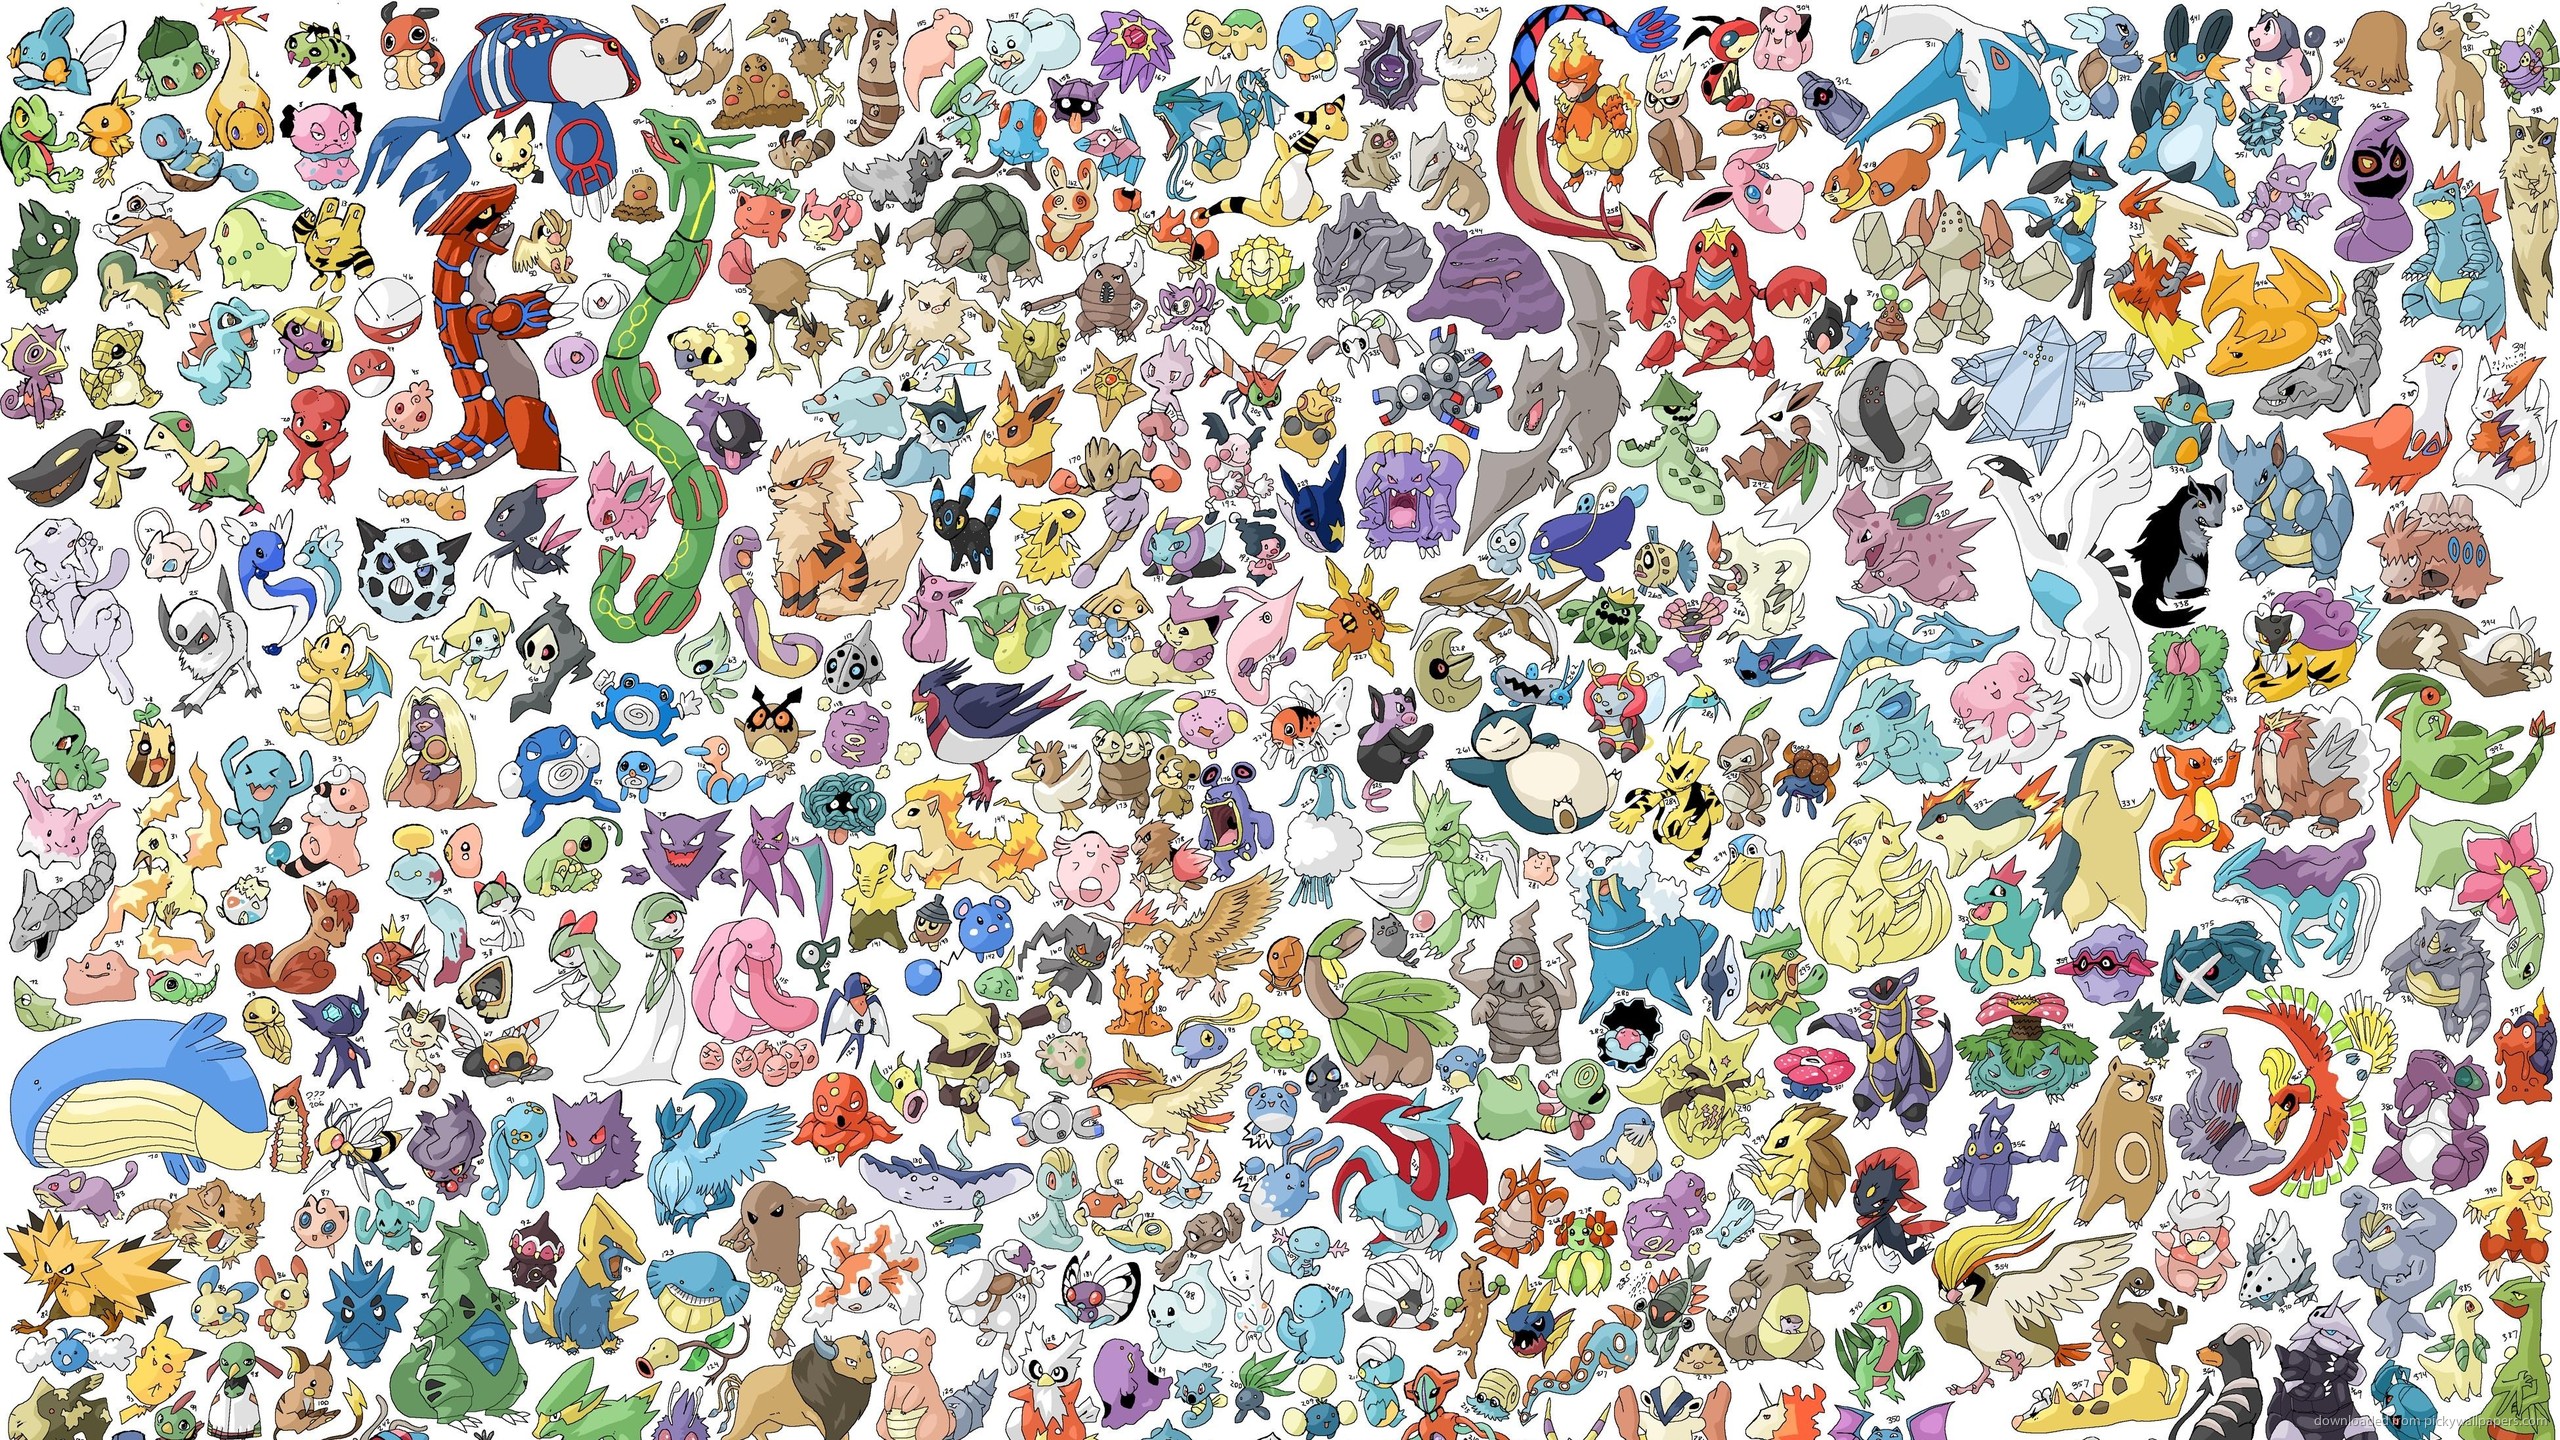 Download 2560x1440 Hundreds Of Pokemons Wallpaper